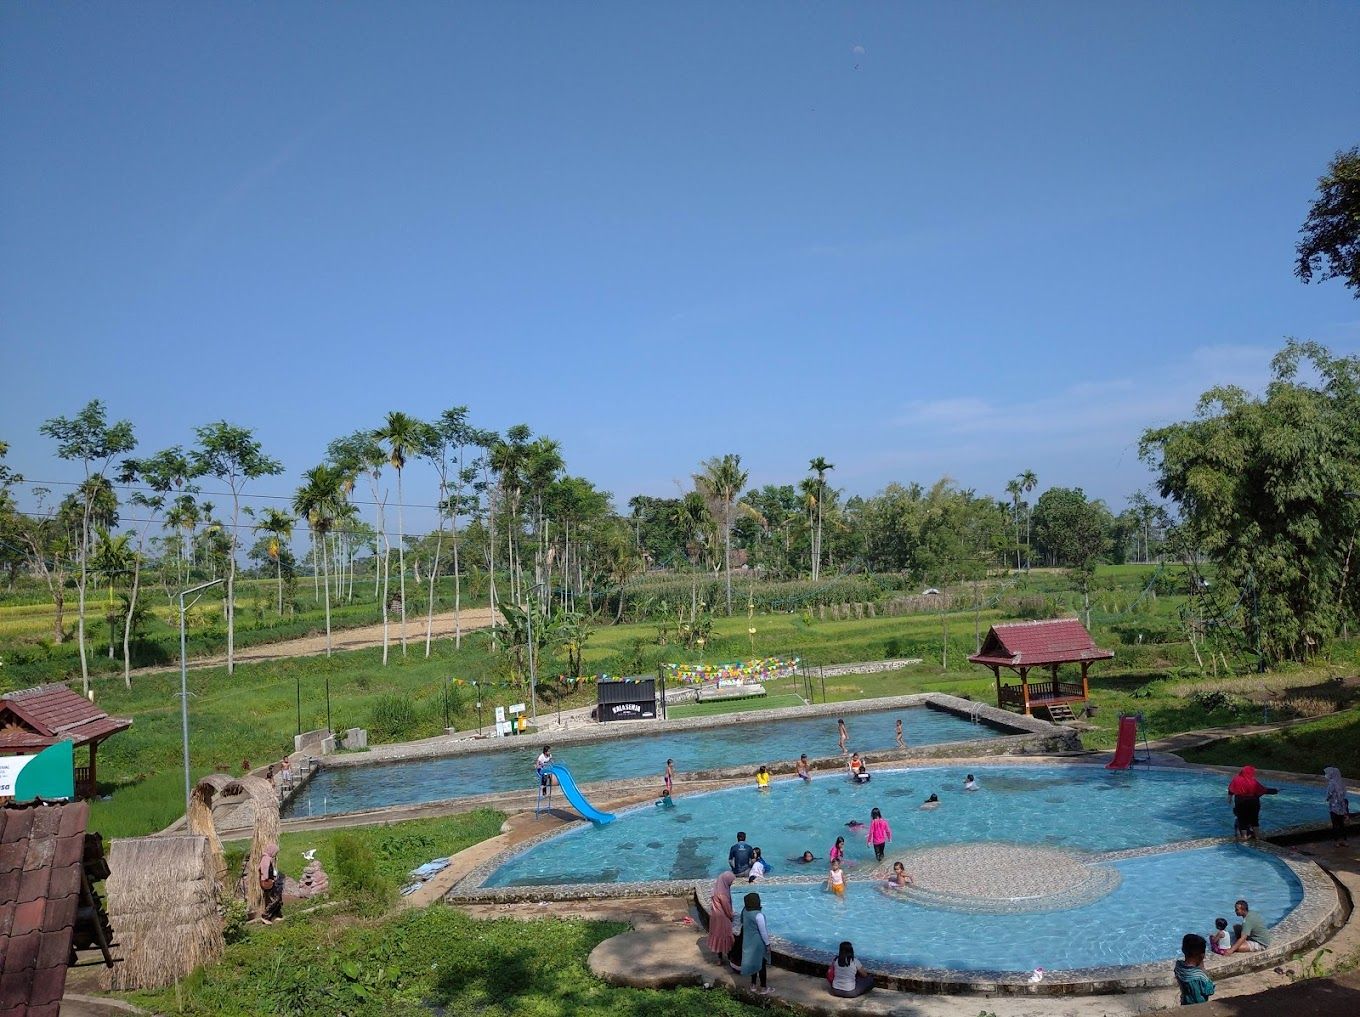 5 Wisata Kolam Renang di Bondowoso yang Cocok Jadi Tempat Liburan Keluarga, Ini Daftar Tiket Masuknya! - Situbondo Network - Halaman 3